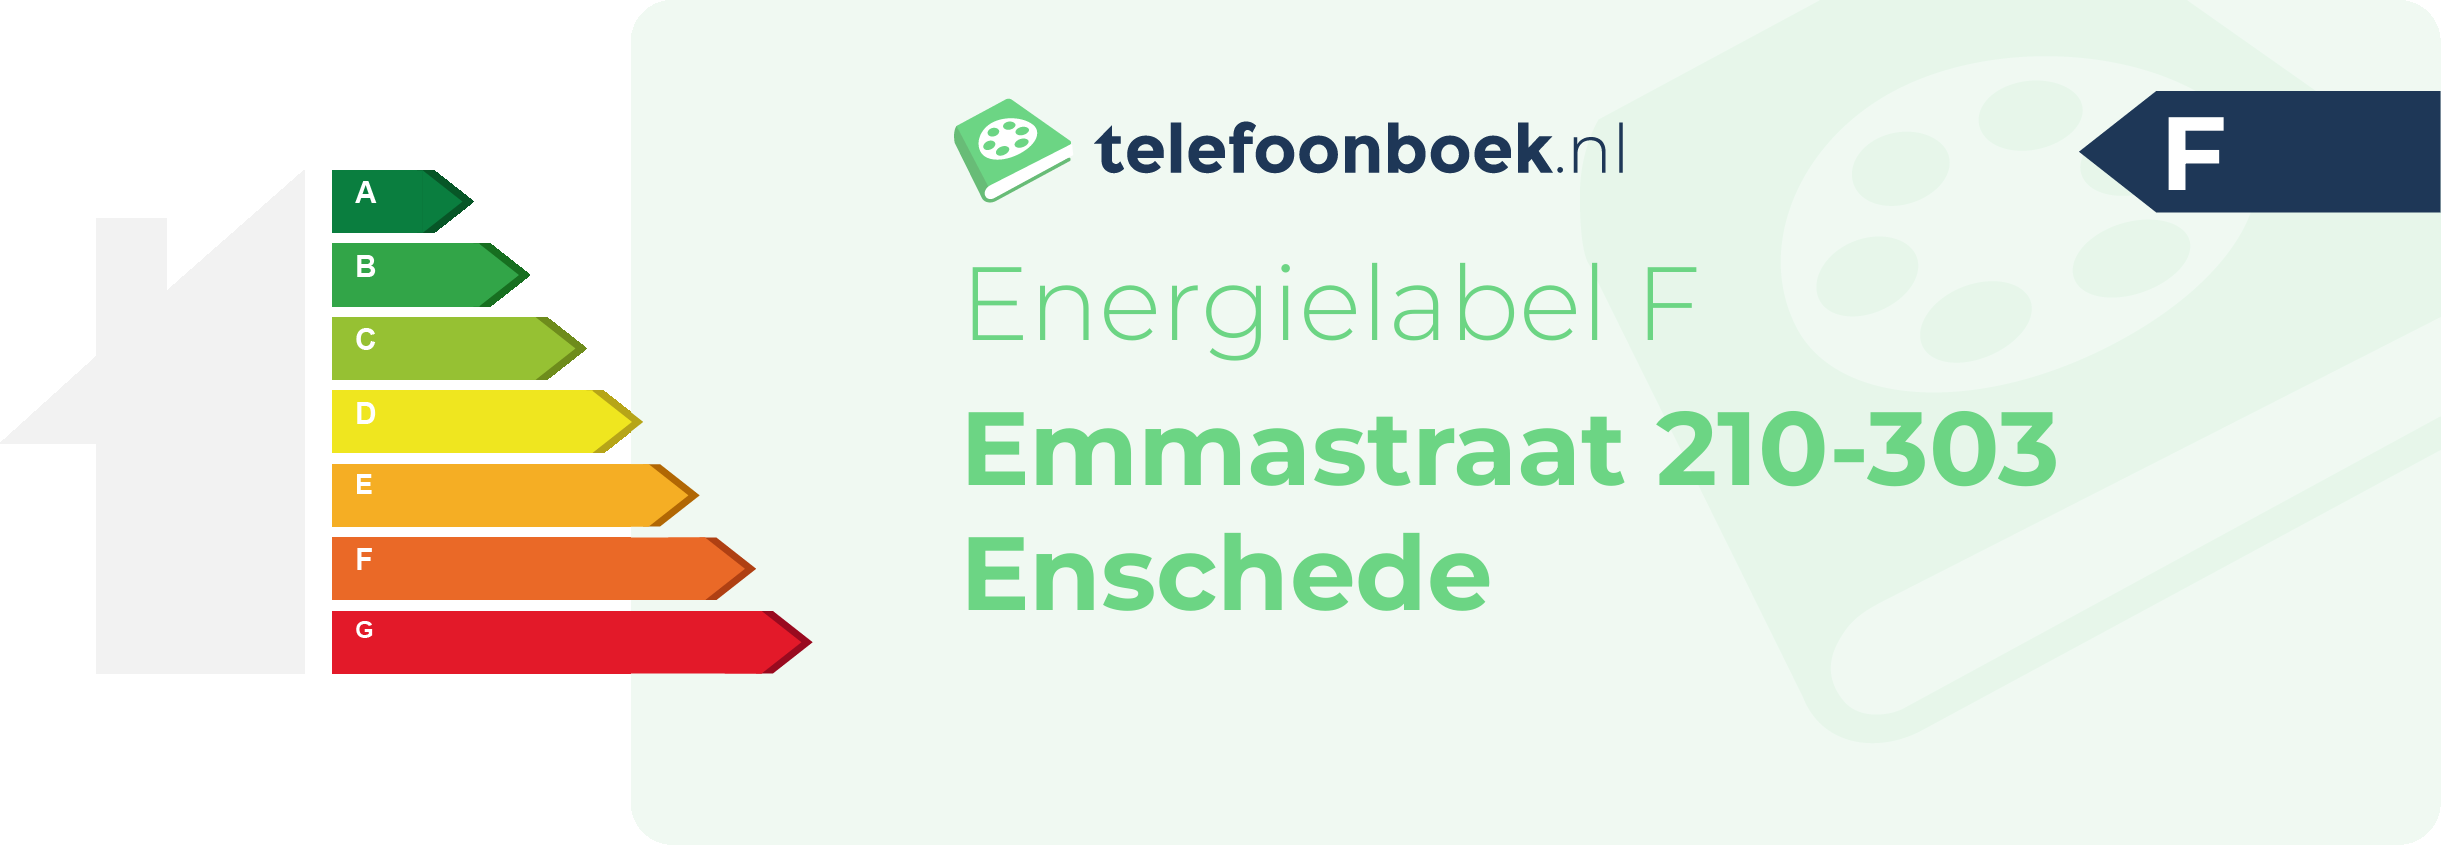 Energielabel Emmastraat 210-303 Enschede